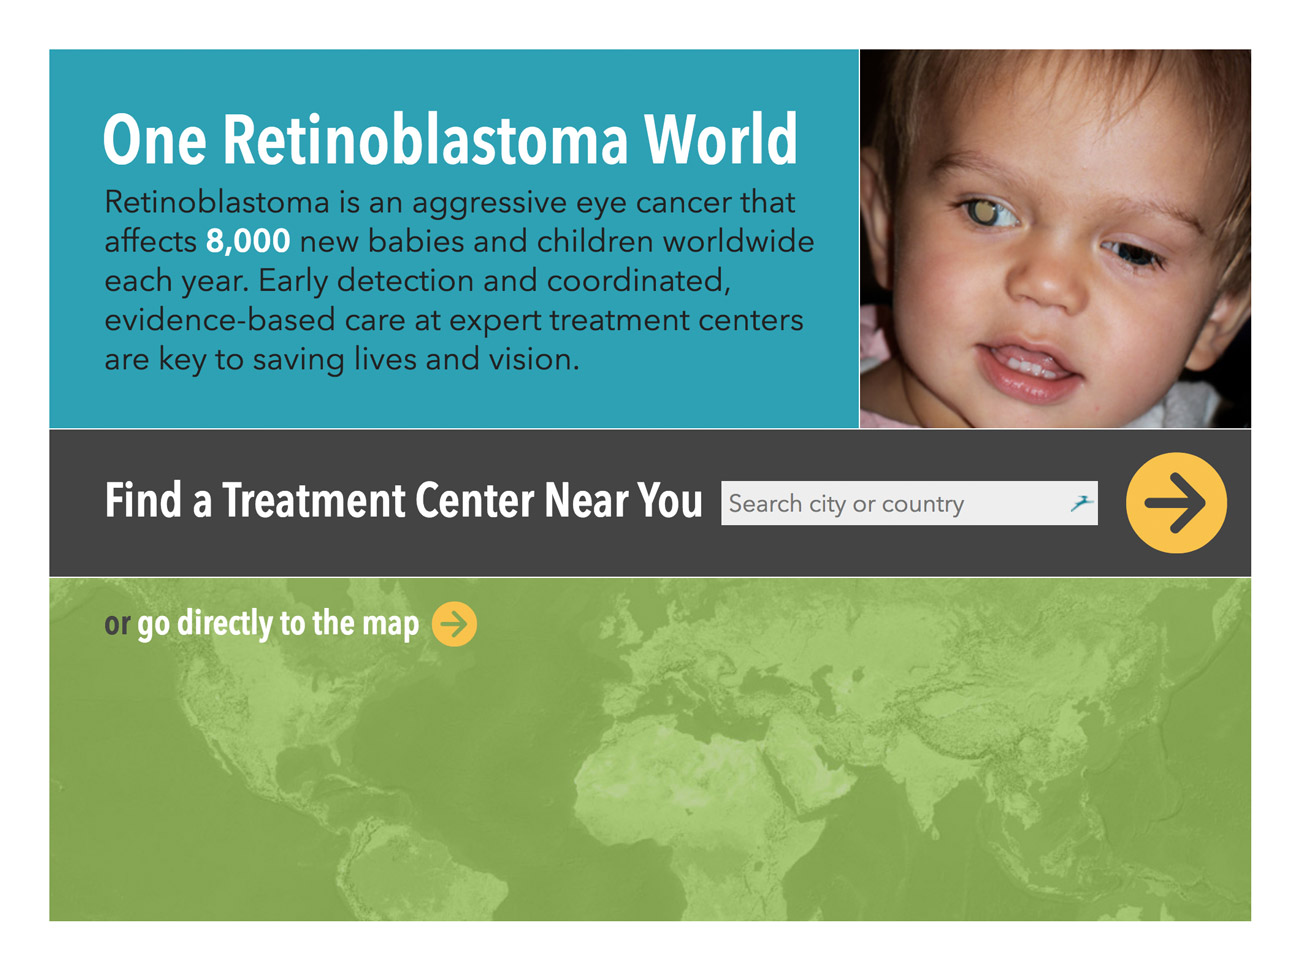 One Retinoblastoma World, Home screen